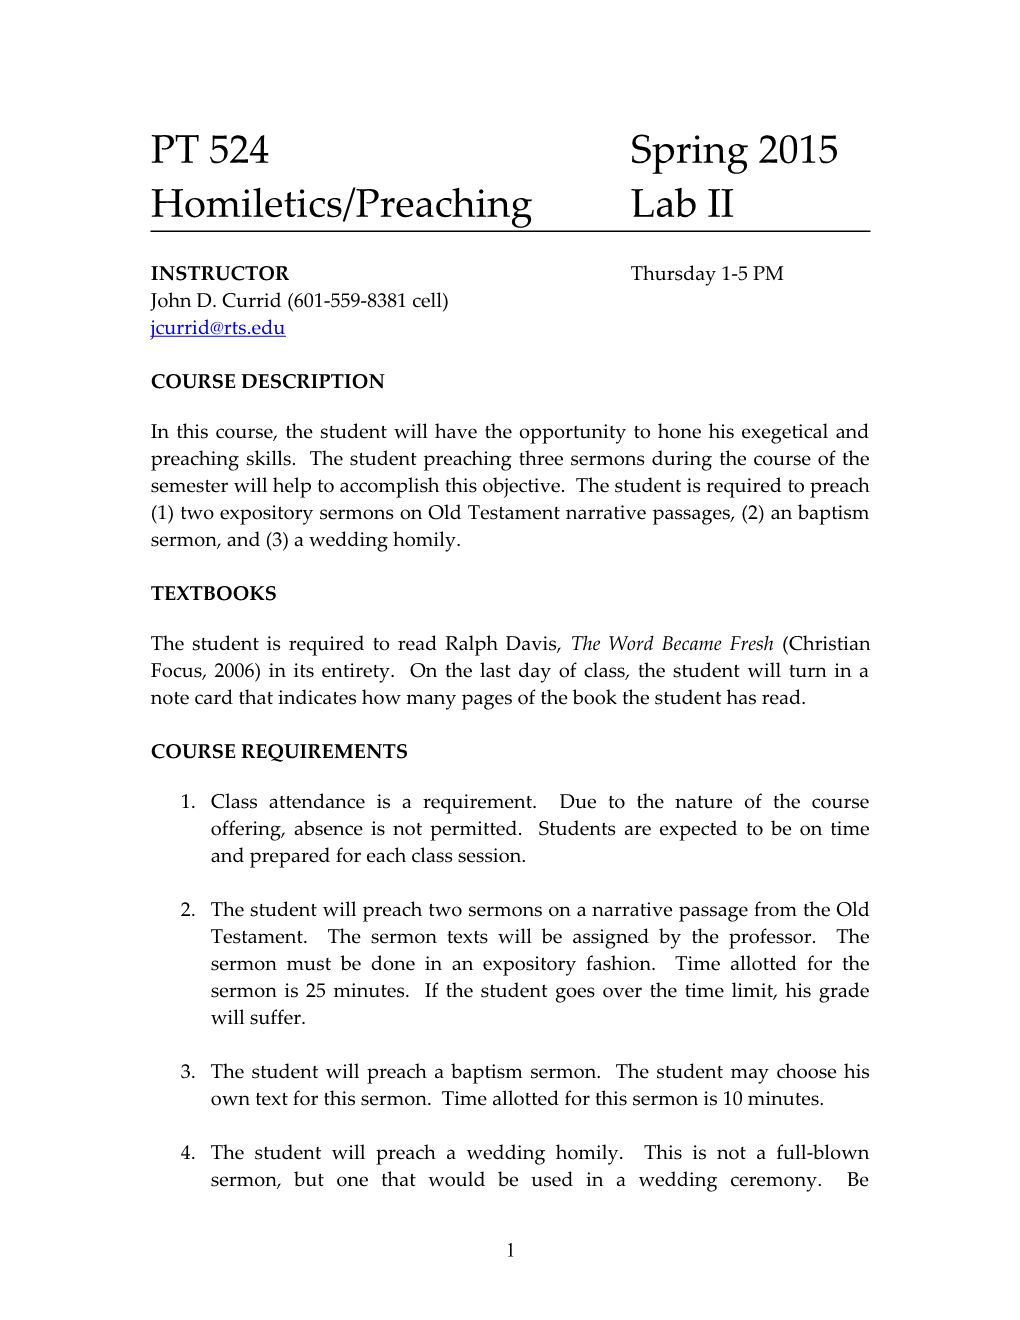 Homiletics/Preachinglab II